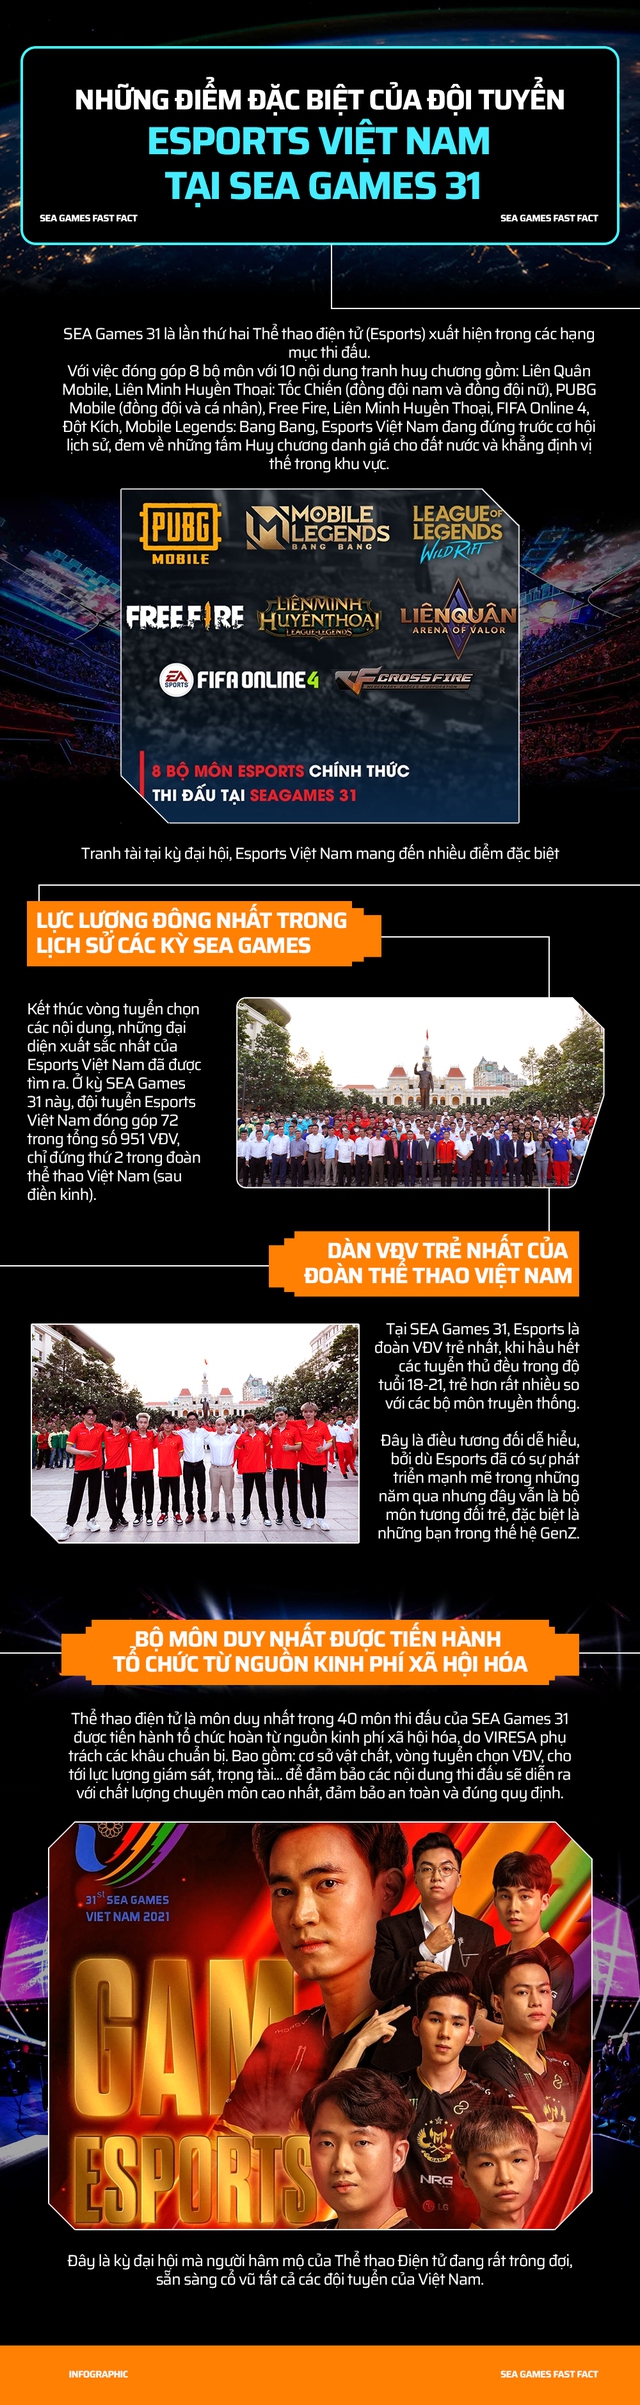 Infographic: Đội tuyển Esports nổi bần bật trong hàng ngũ đoàn Thể thao Việt Nam tại SEA Games 31 - Ảnh 1.